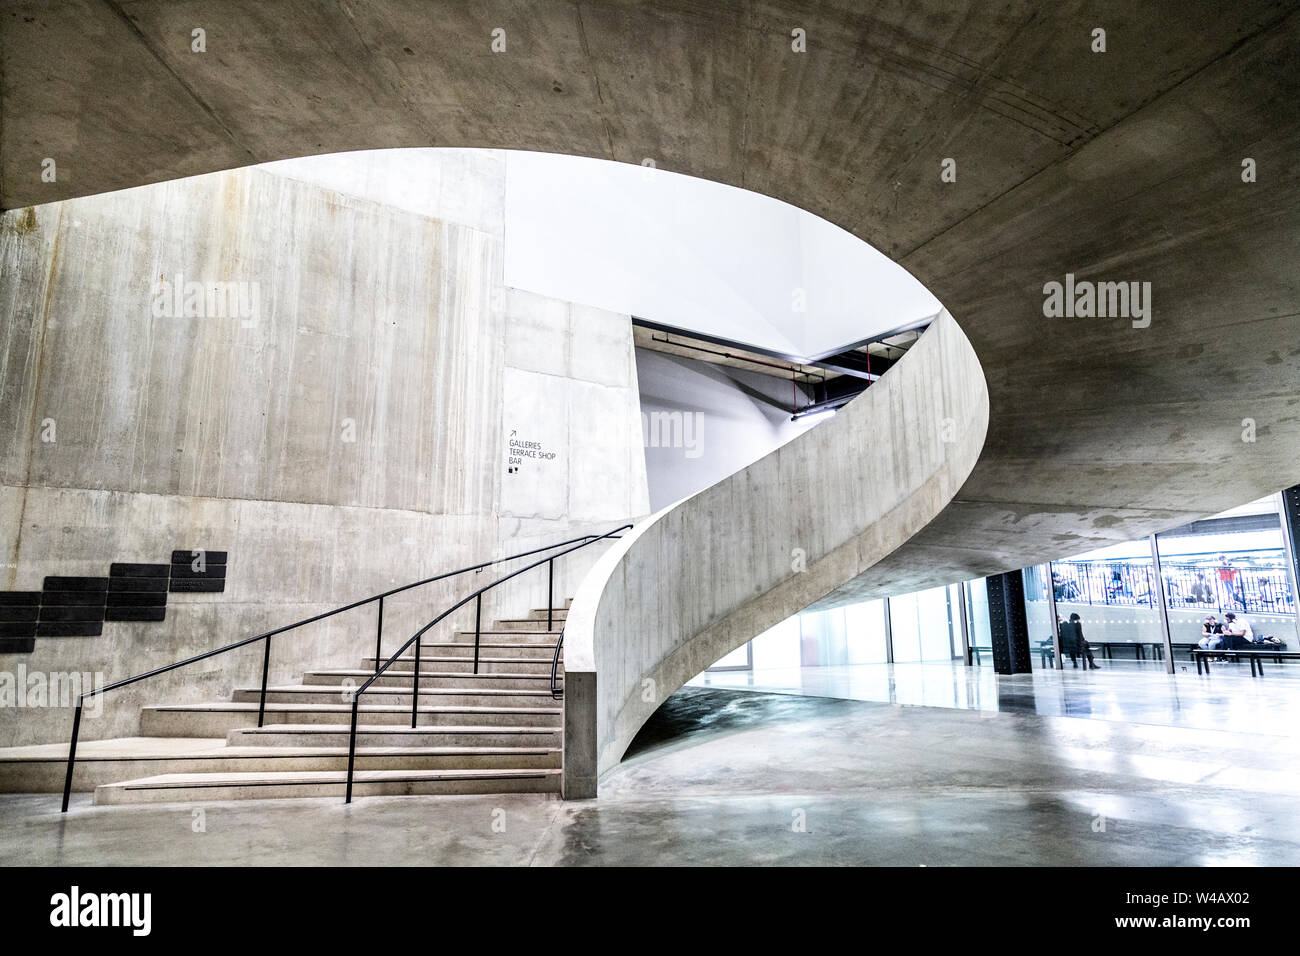 Escalier intérieur de la Tate Modern Blavatnik Building, Londres, UK Banque D'Images